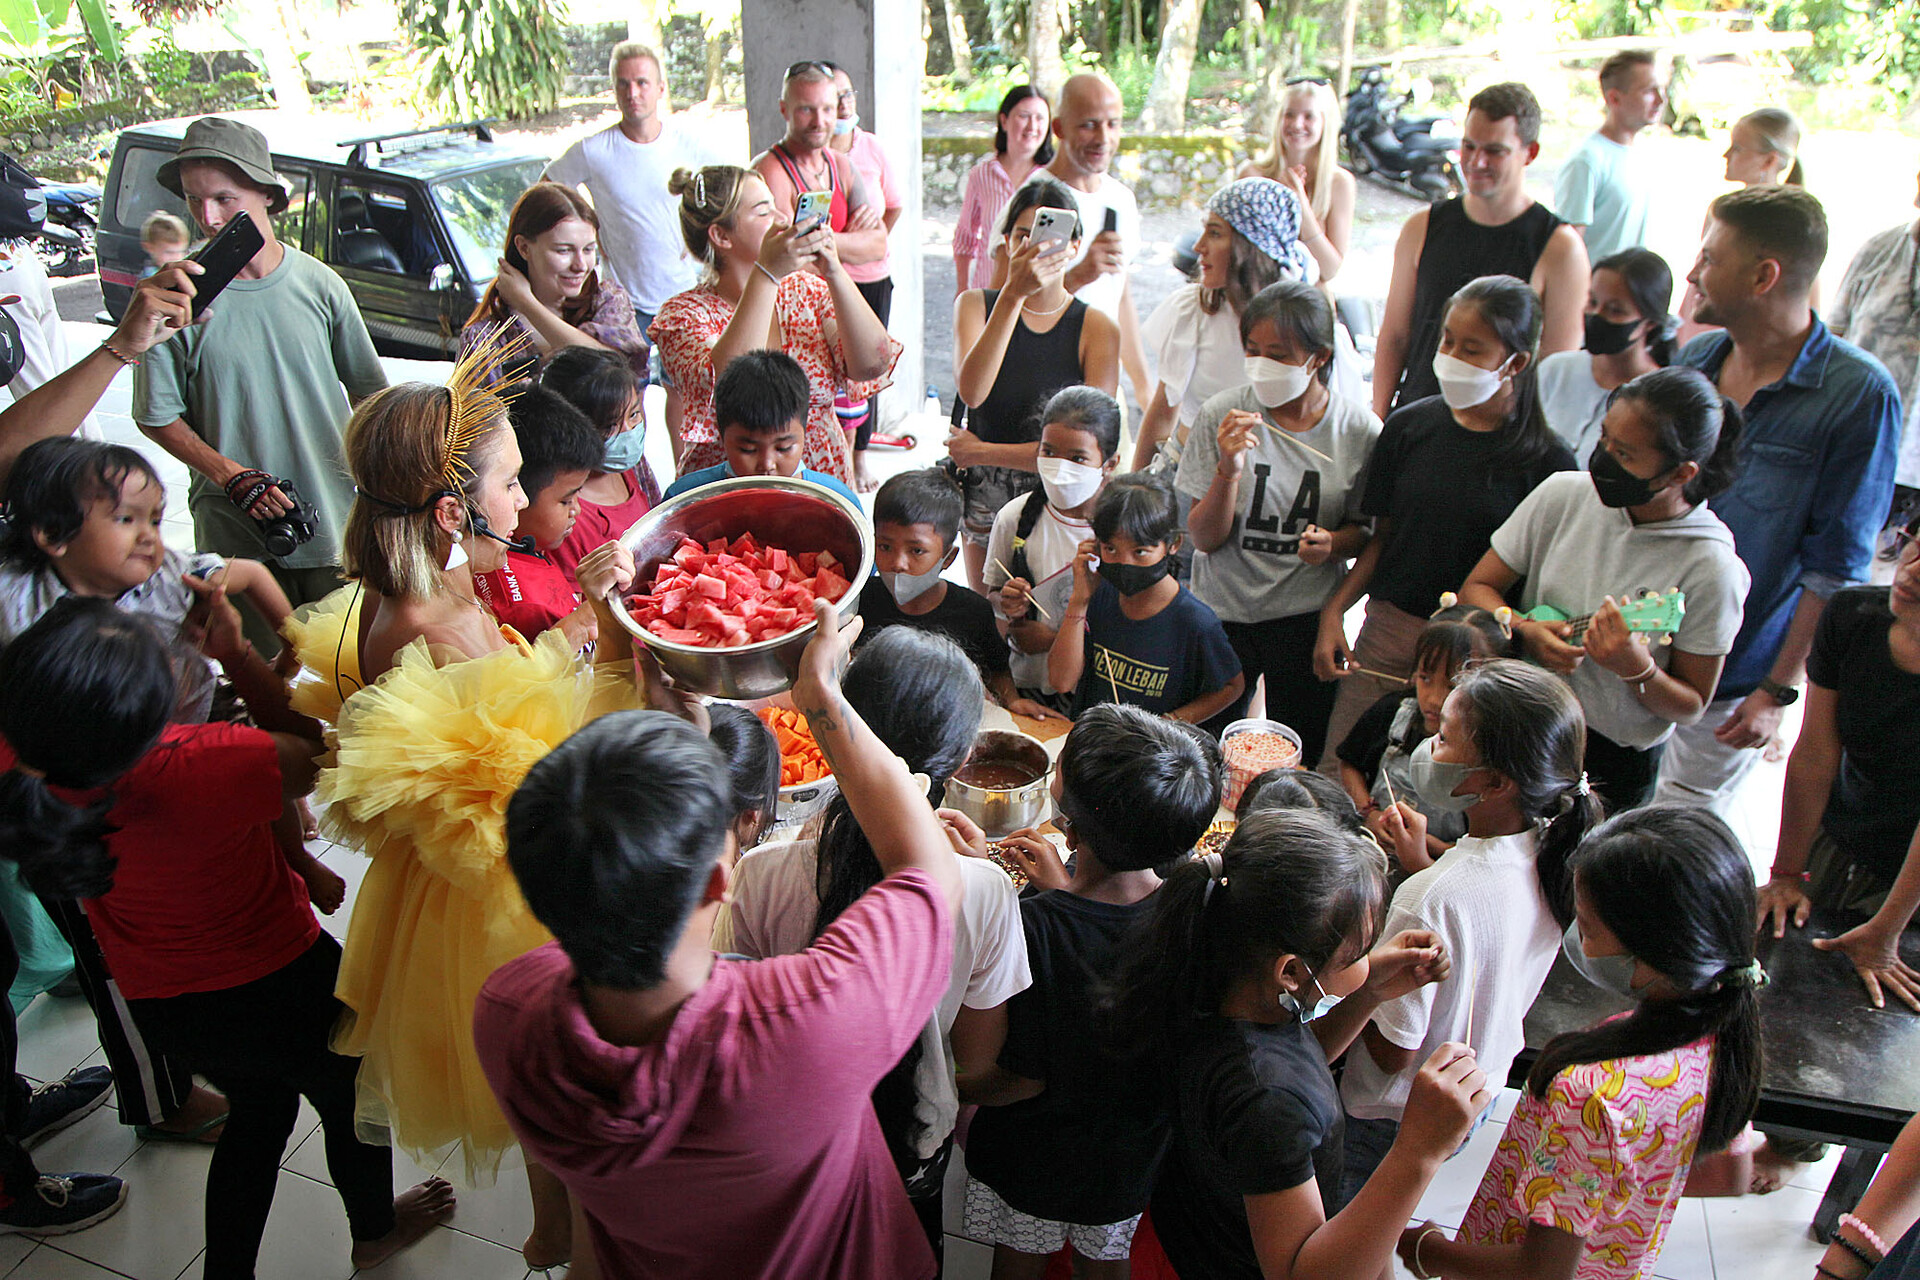 Anak-anak menyantap hidangan buah yang dicelupkan ke dalam cokelat cair.